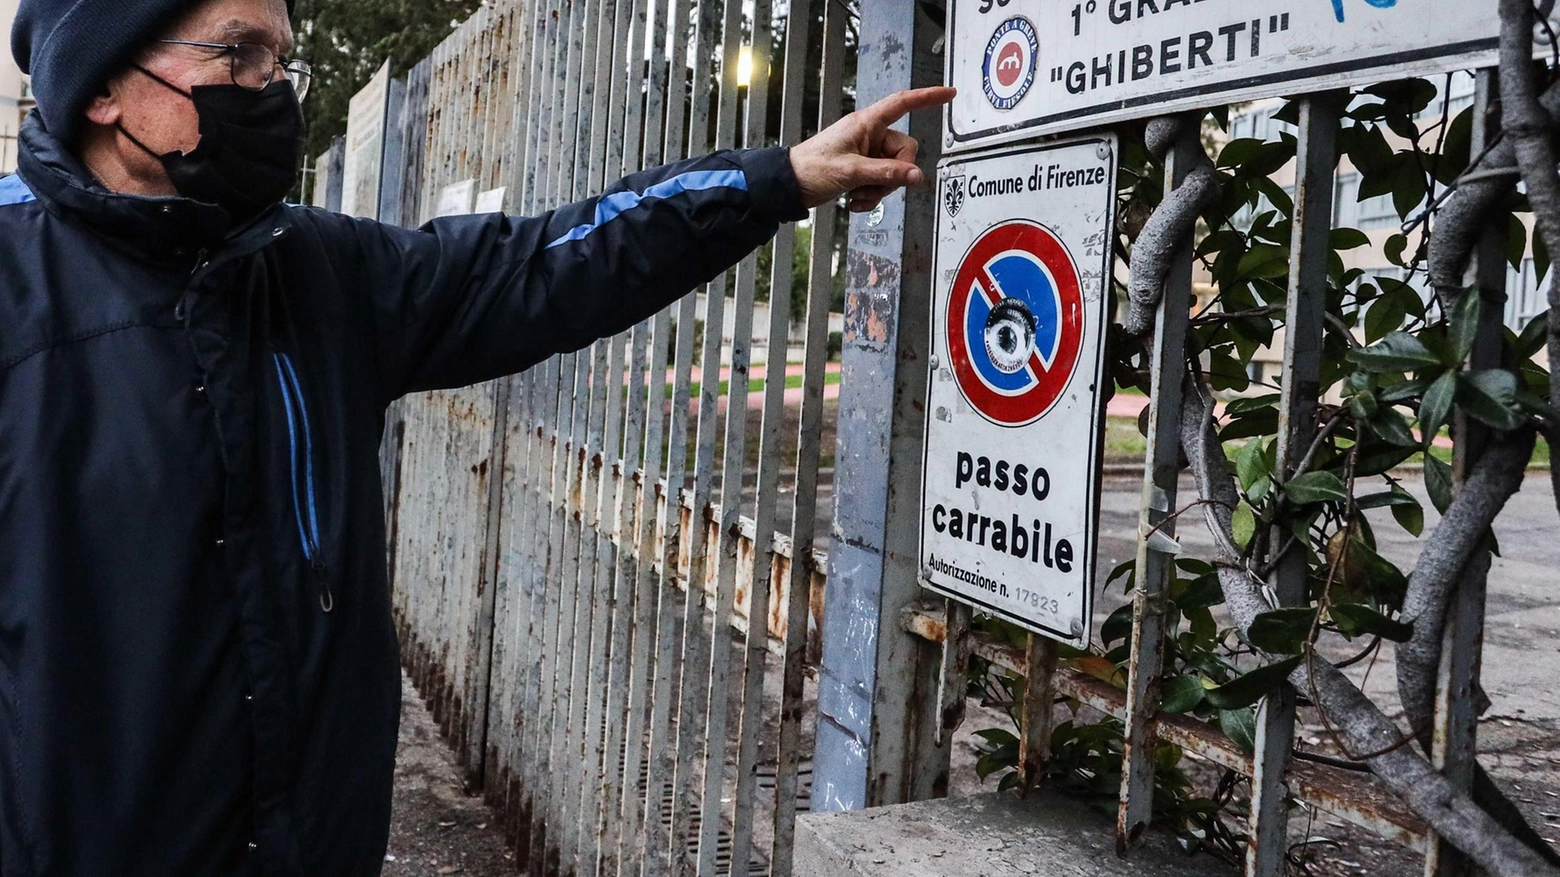 Ghiberti, sblocco cantieri: "Demolizione a fine mese"